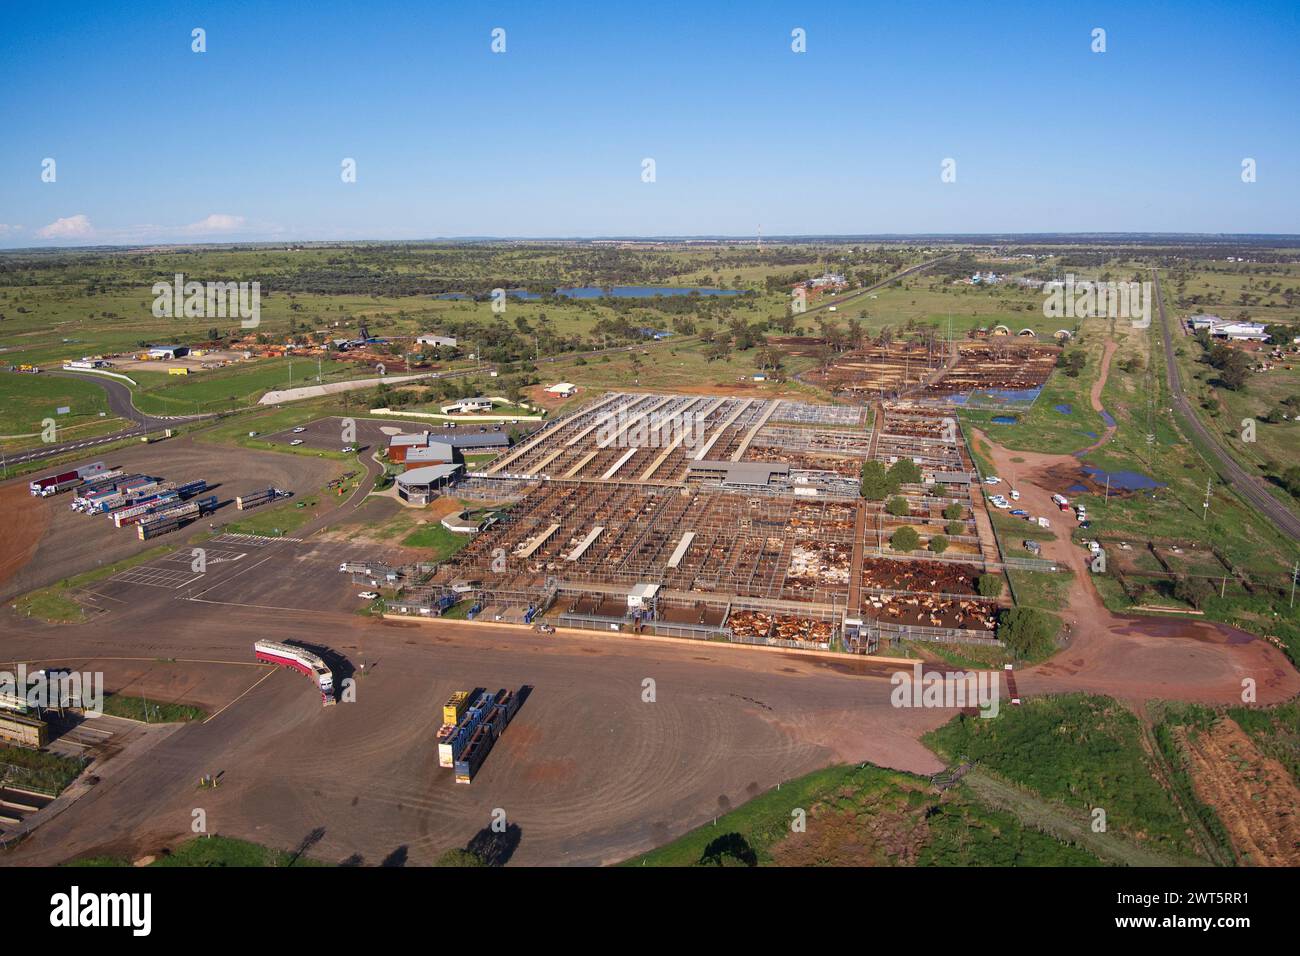 Aerea dei Roma Saleyards, il più grande centro di vendita di bestiame australiano, con oltre 400.000 capi di bestiame che passano attraverso un anno. Roma, Queensland, Australia Foto Stock